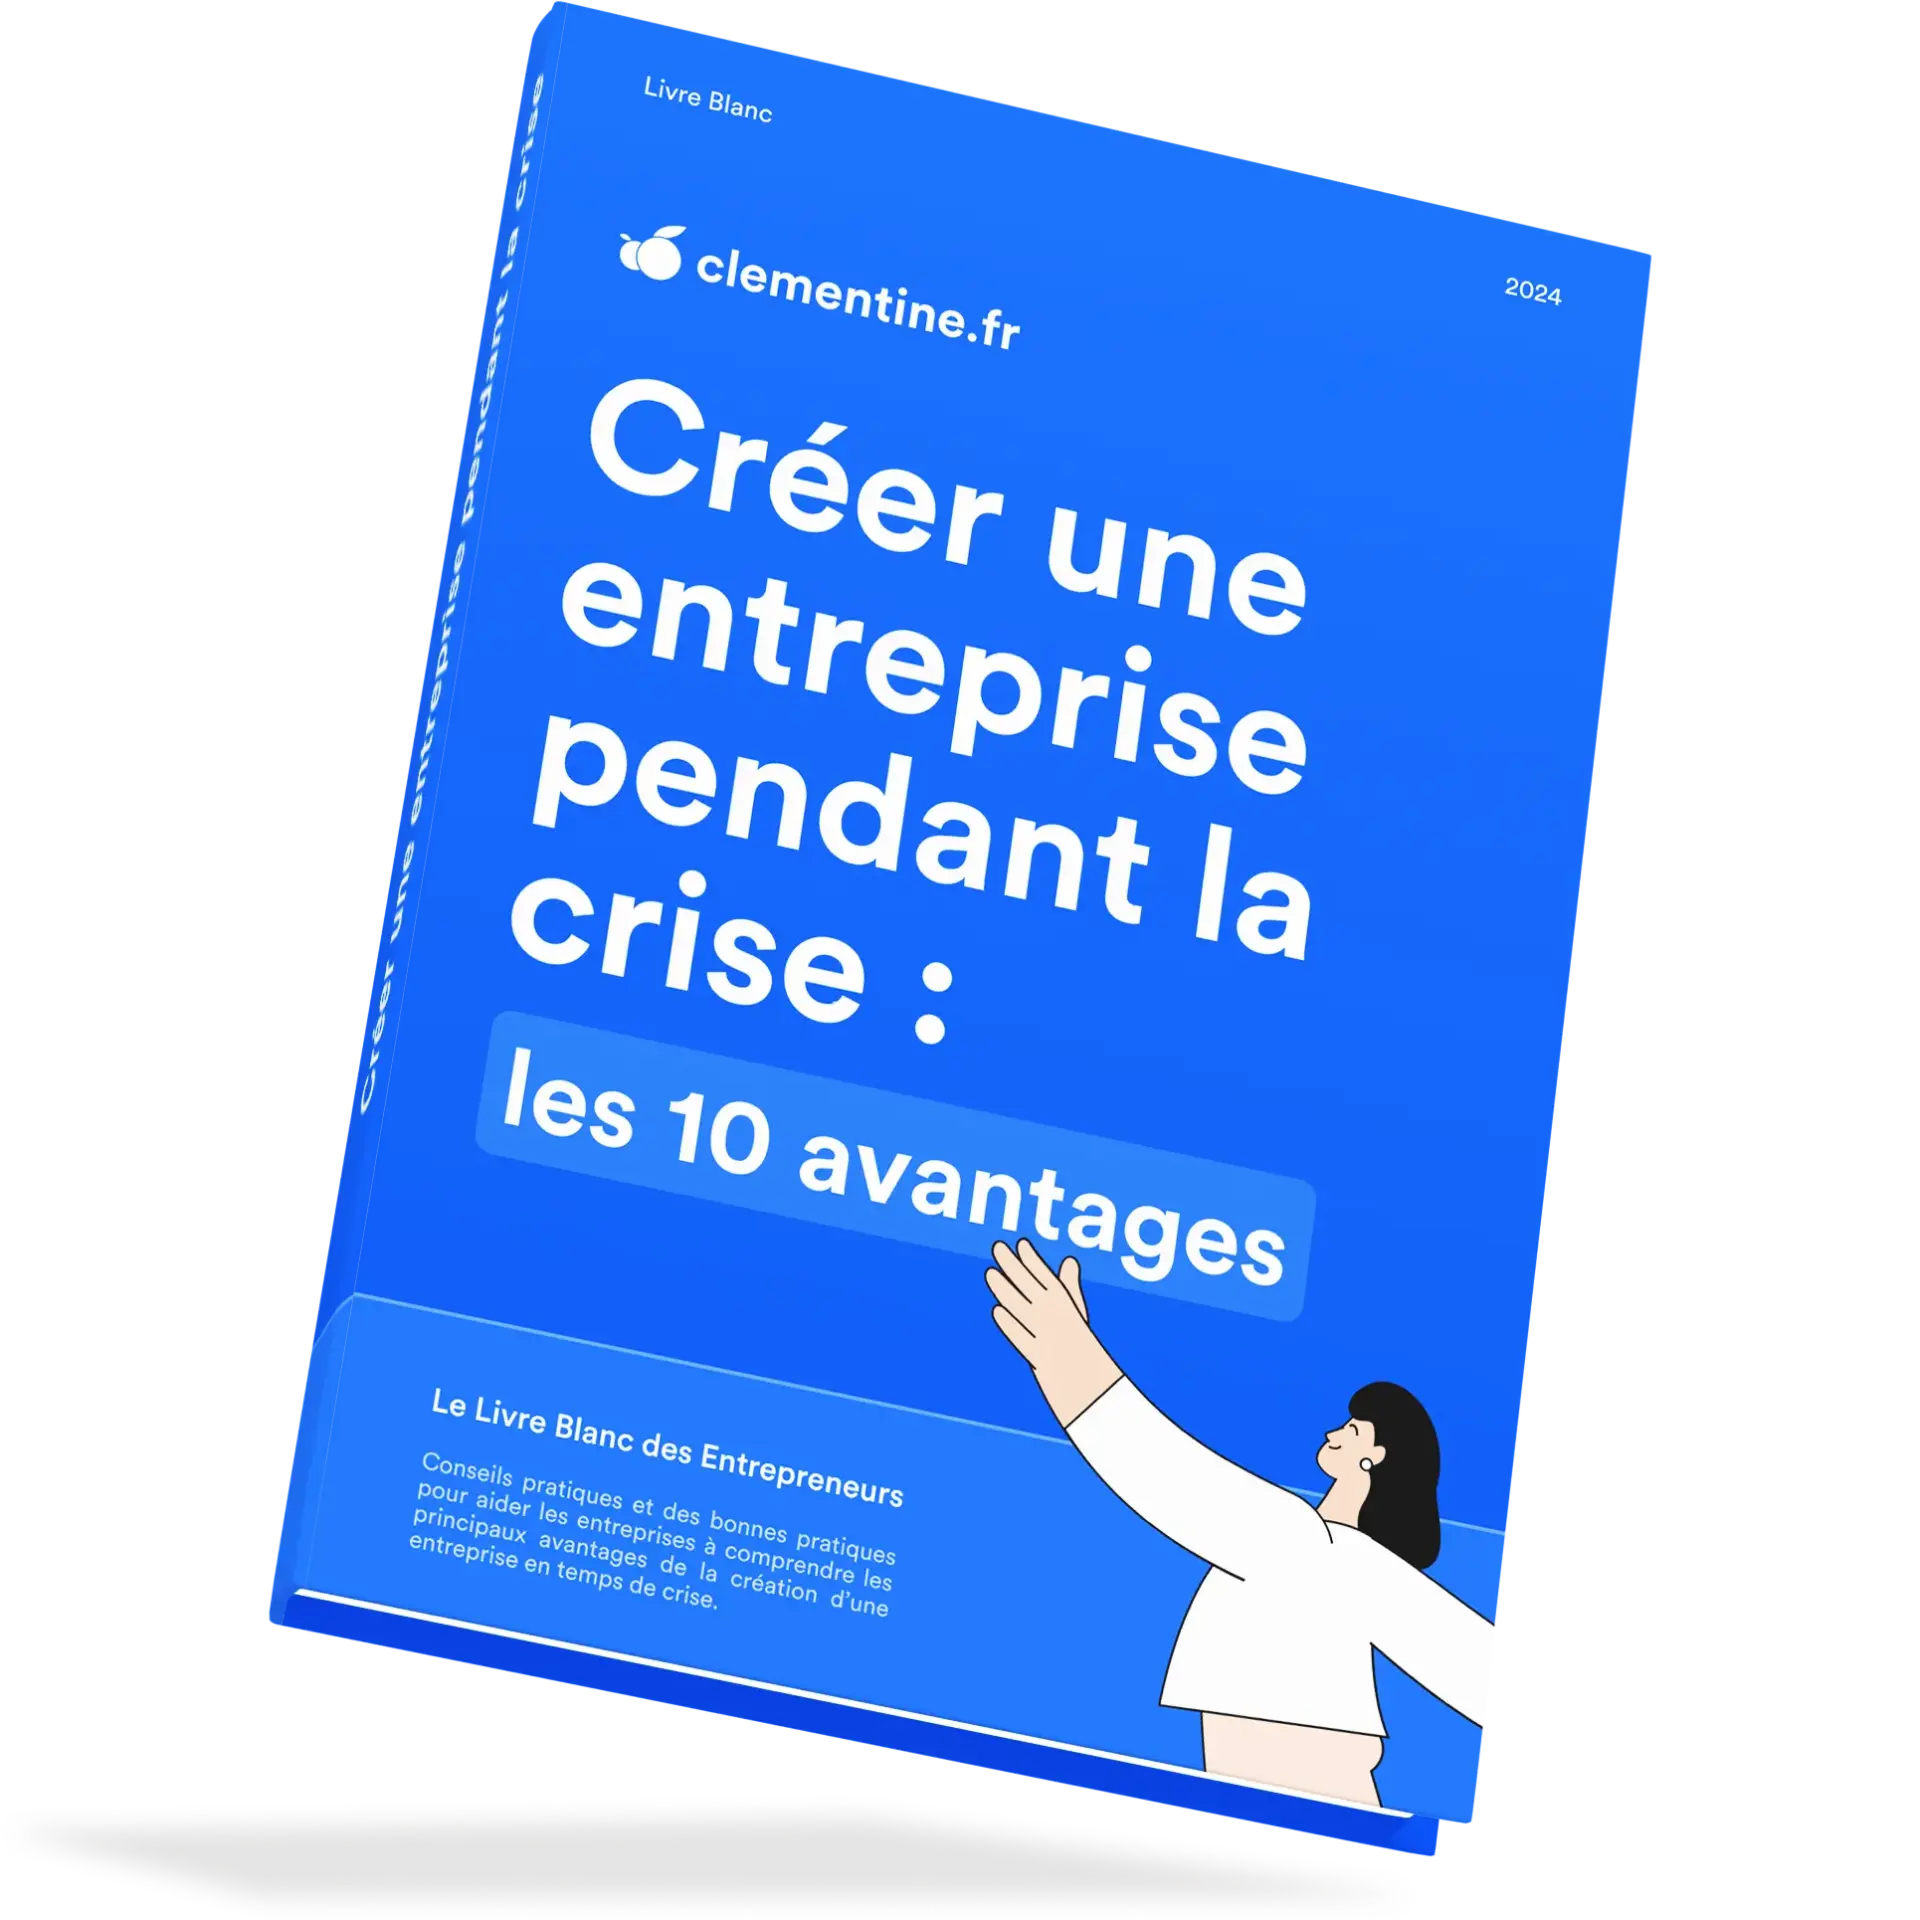 Photo du livre Créer une entreprise pendant la crise : les 10 avantages sur fond bleu